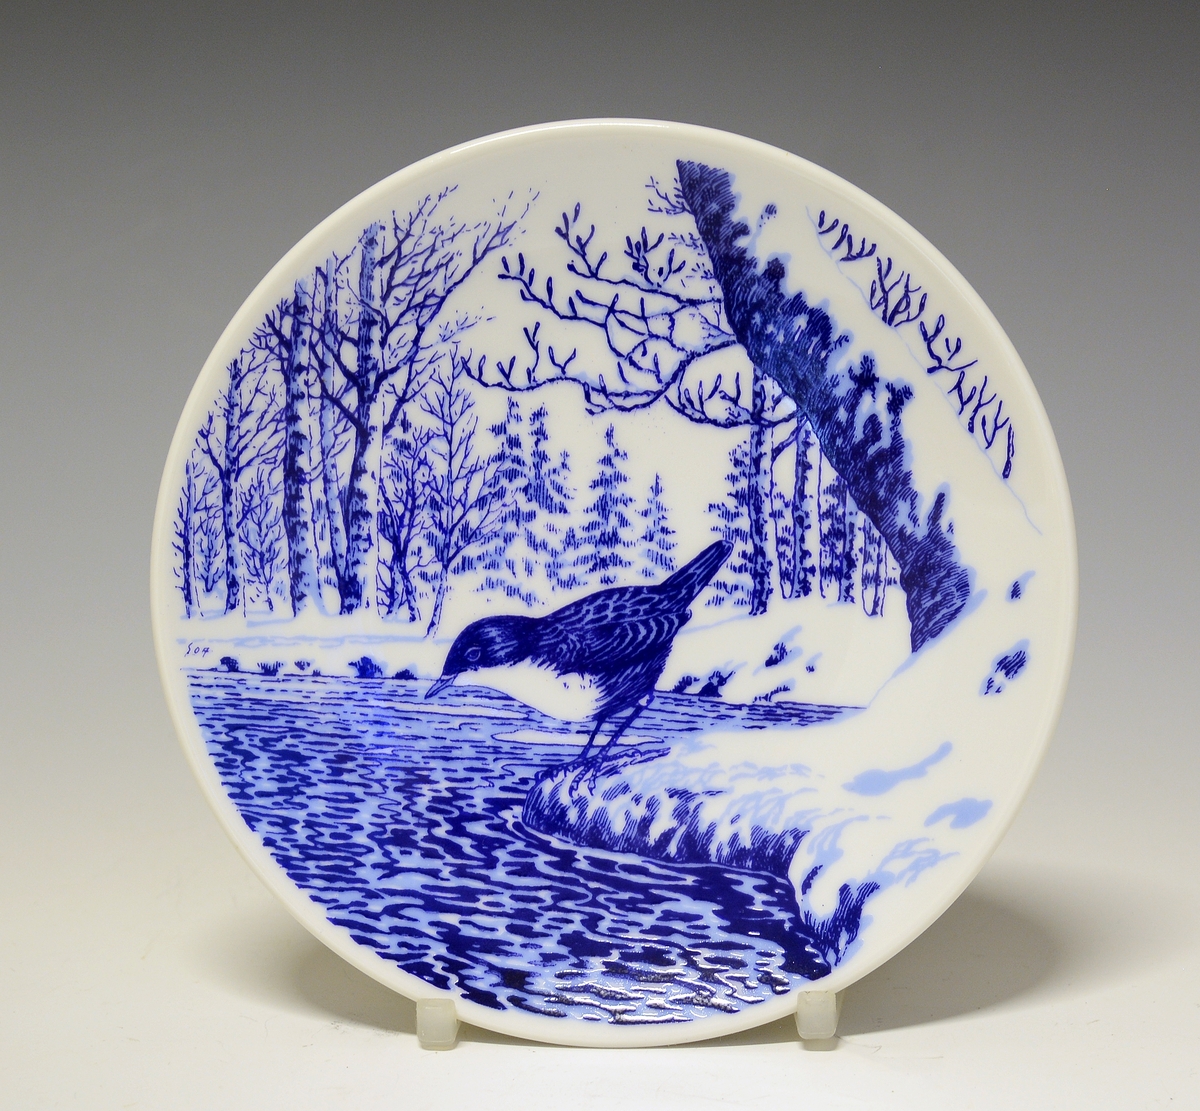 Platte i porselen med blå trykkdekor. Fossekall ved vann i vinterlandskap.